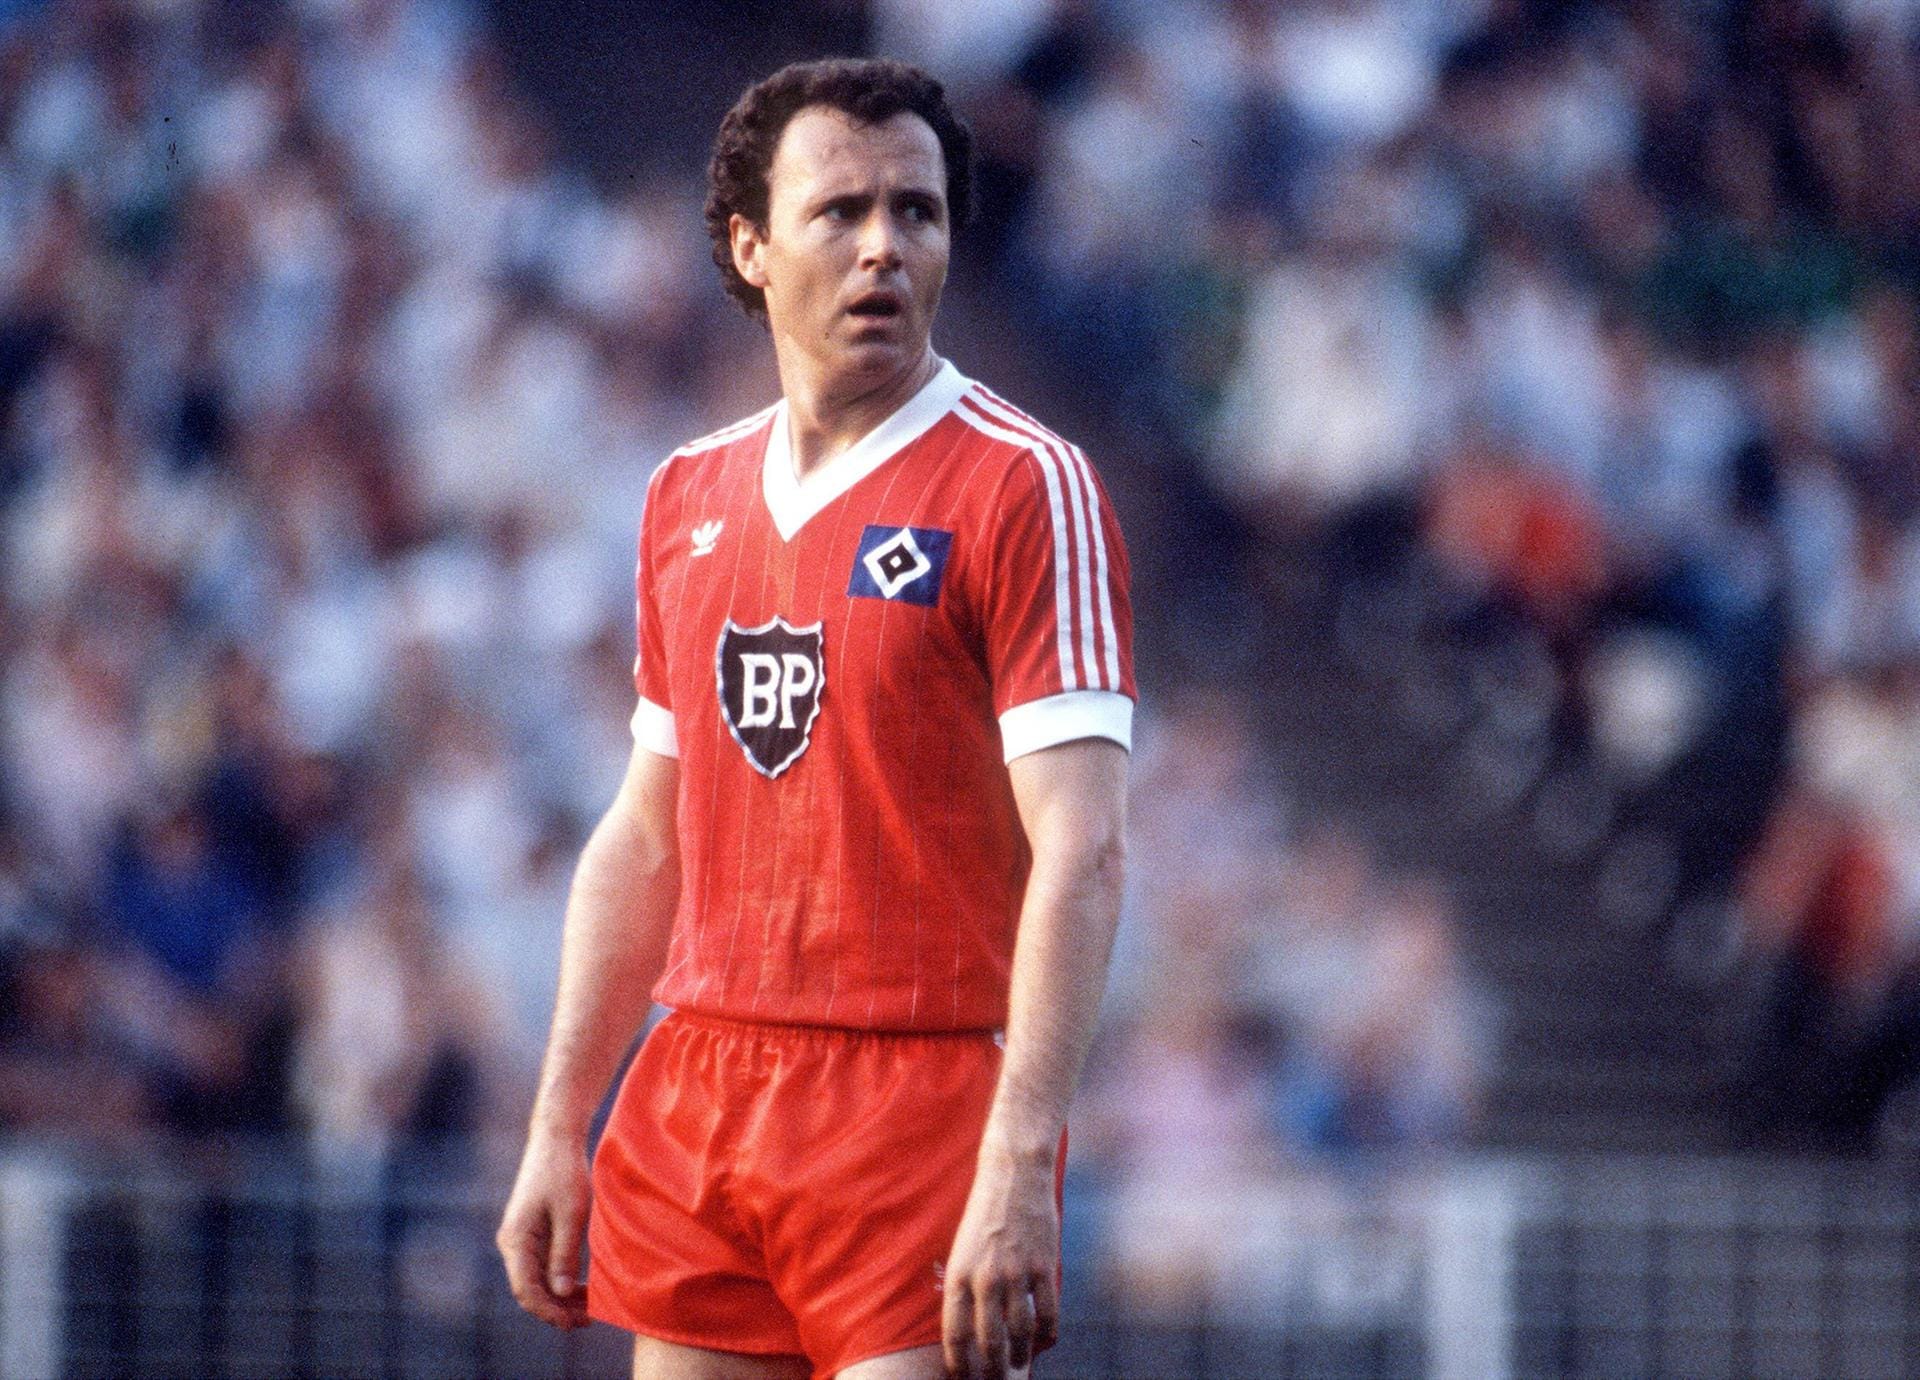 Etwas überraschend kehrt Beckenbauer 1980 in die Bundesliga zurück. Bevor er seine aktive Laufbahn 1982 beendet, holt Beckenbauer mit dem HSV seinen fünften deutschen Meistertitel. Im folgenden Jahr lässt er sich noch einmal zu einer letzten Saison bei Cosmos New York als Spieler überreden.